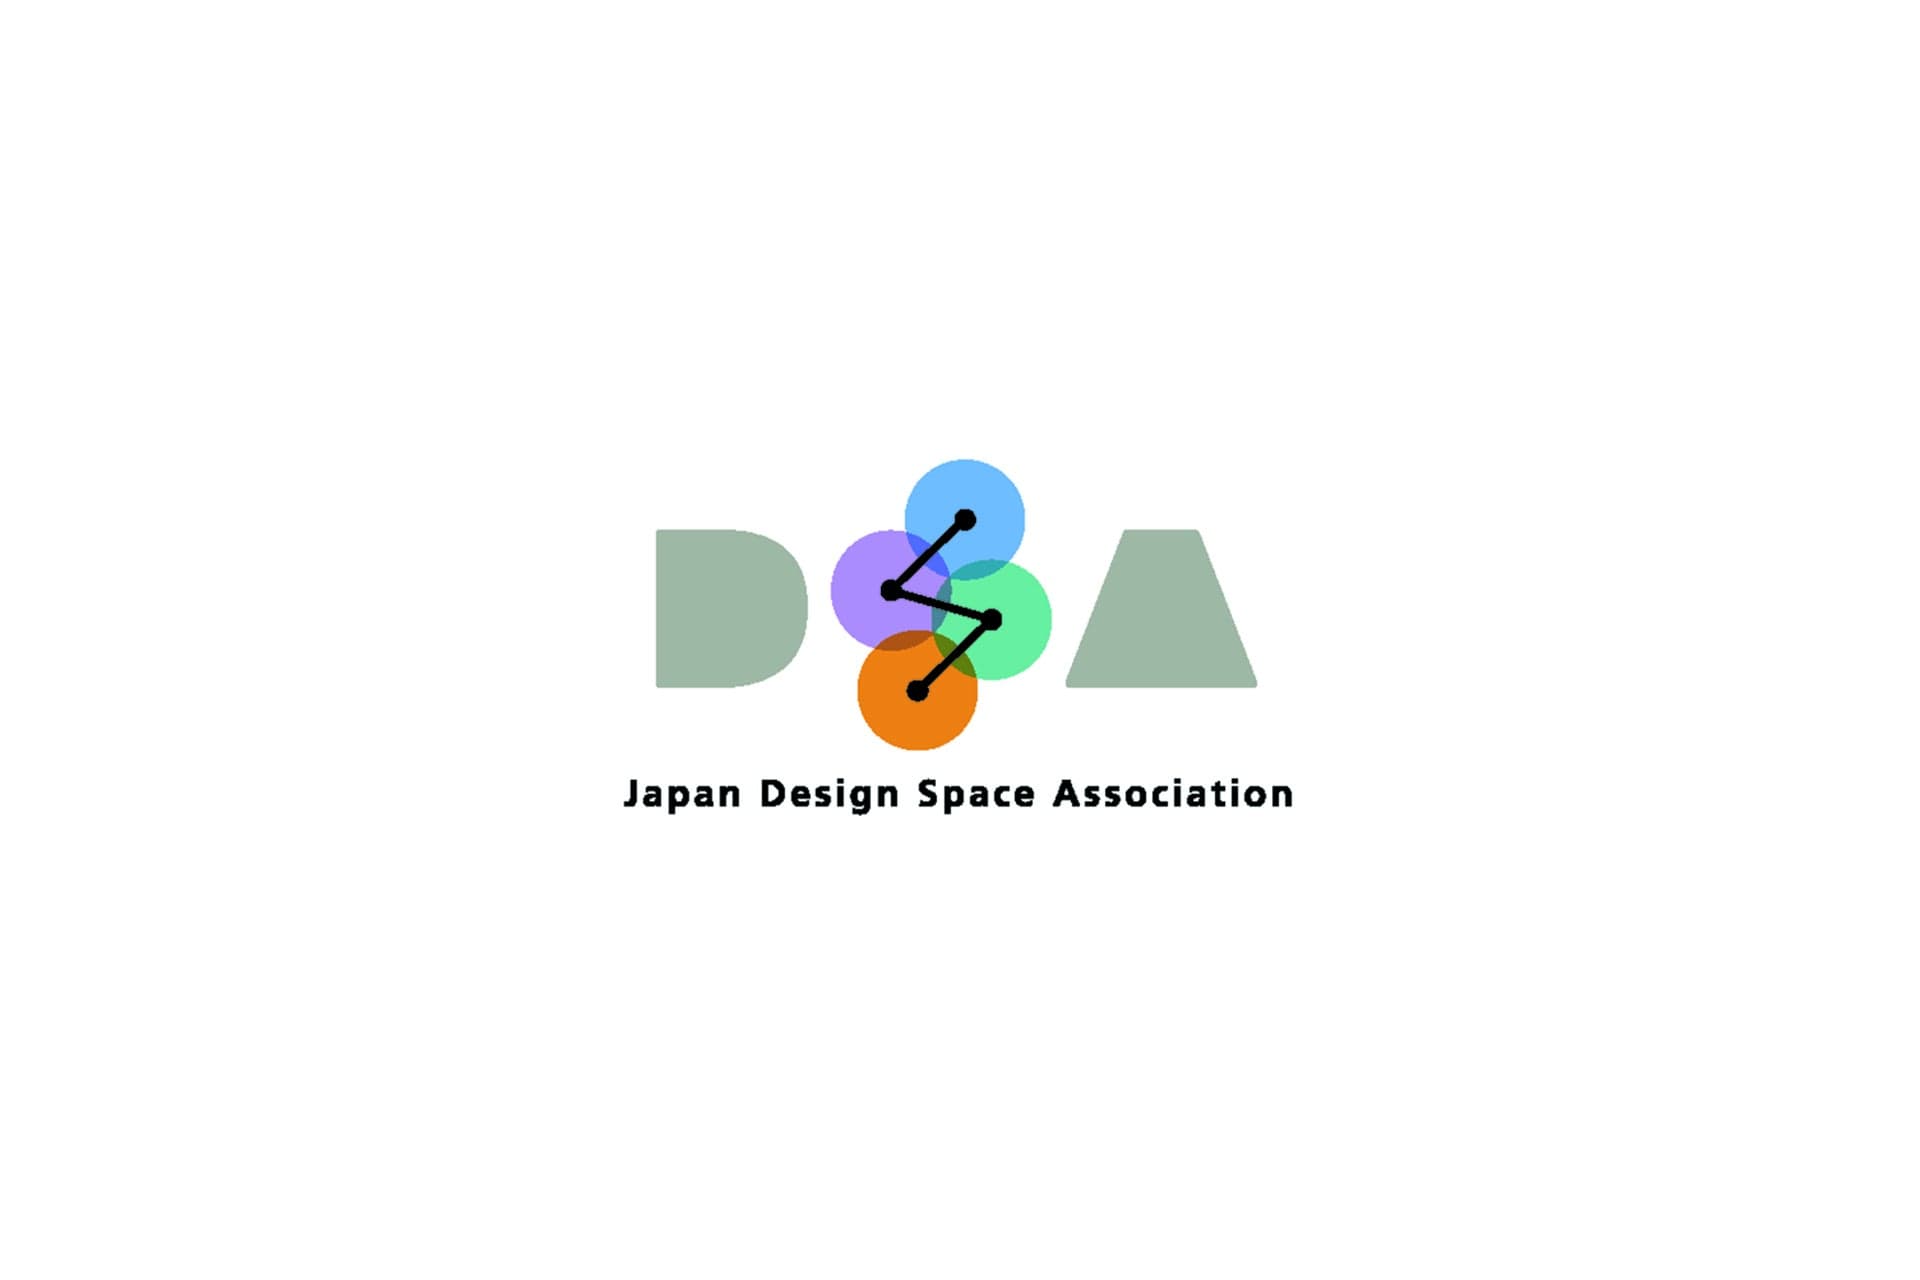 日本空間デザイン協会「THE INTERVIEW」 no.10 渡辺淳の記事が公開になりました